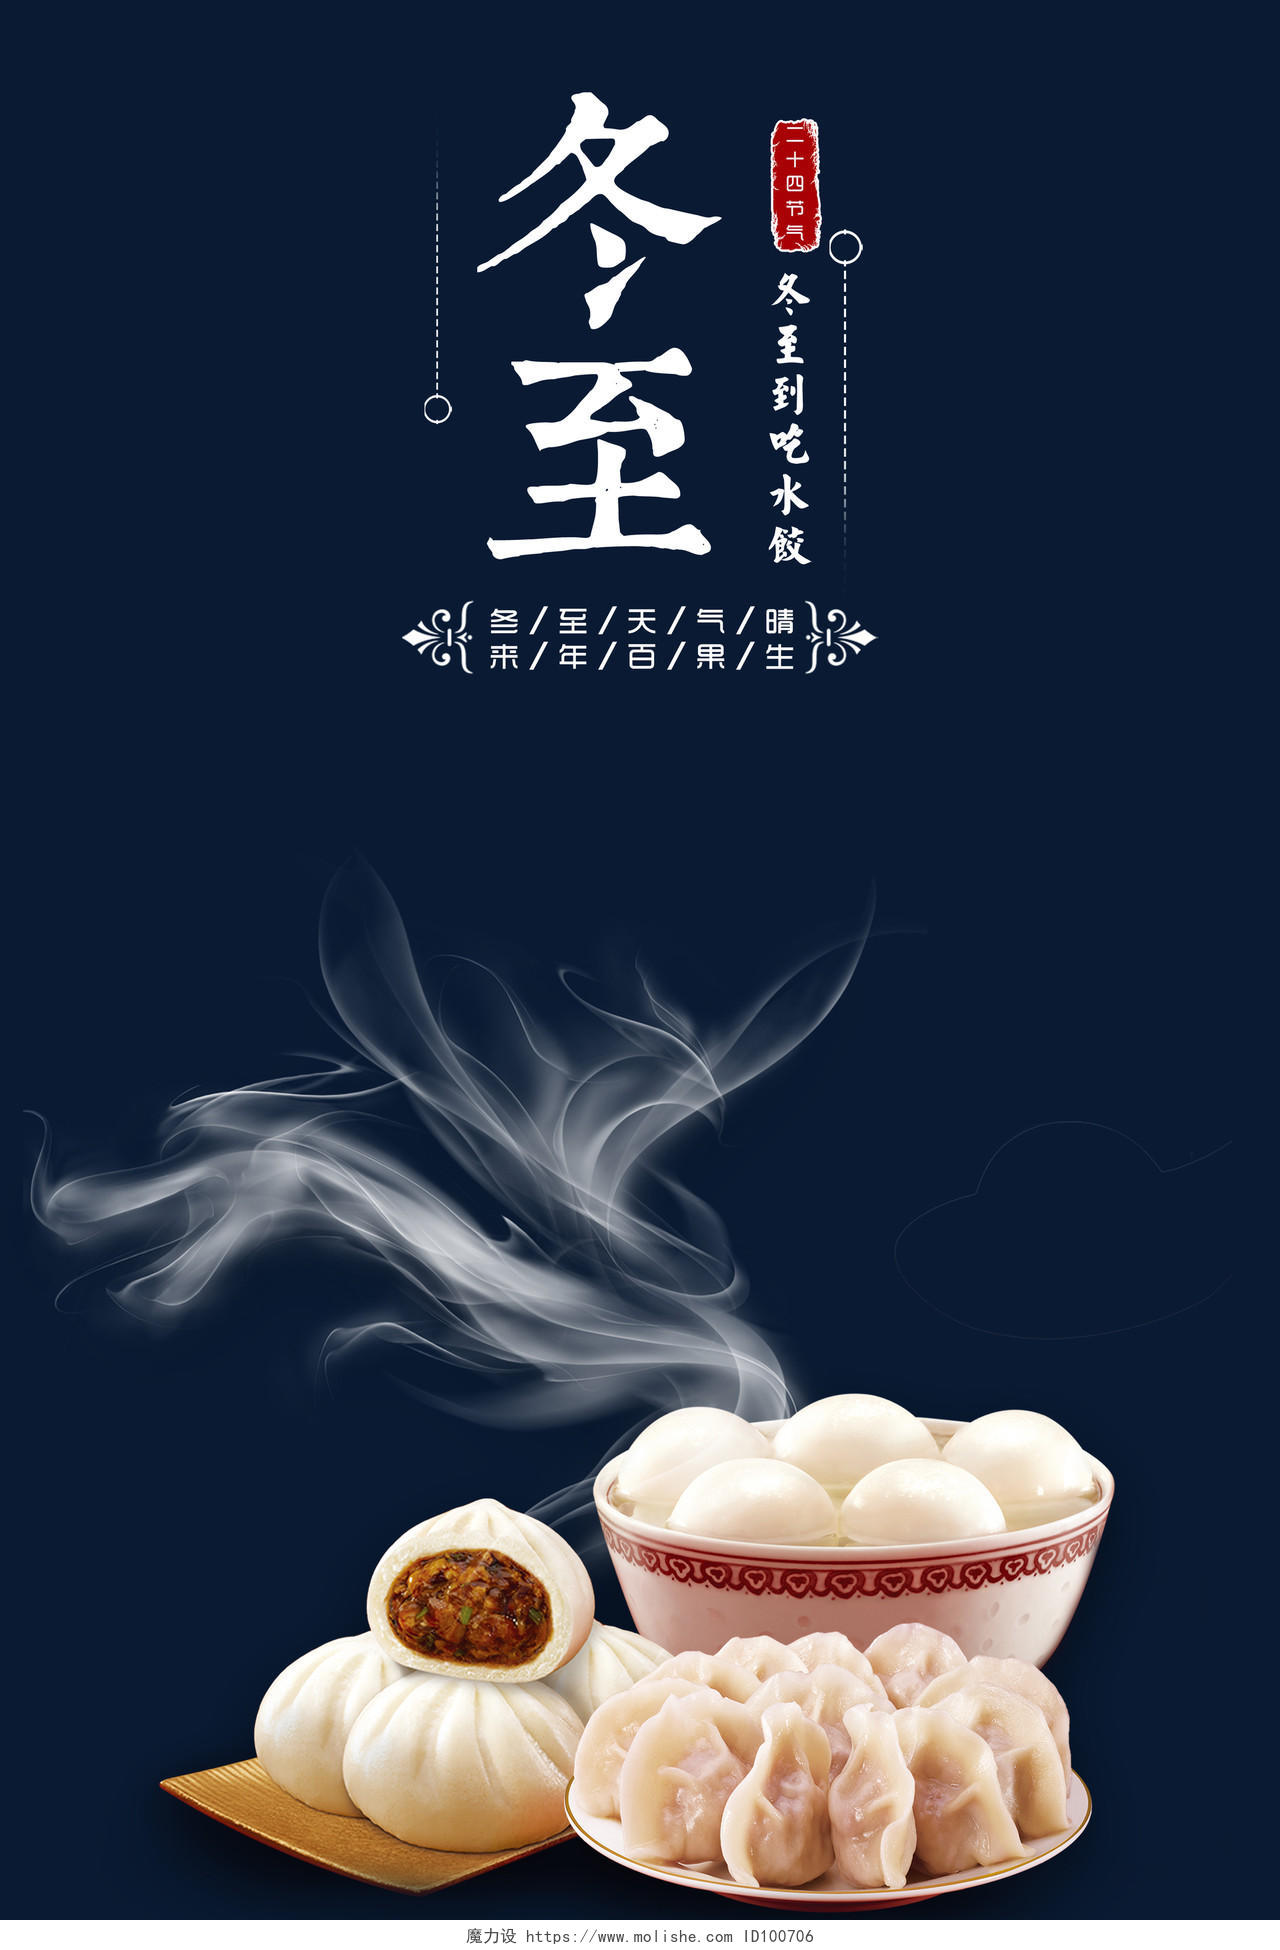 创意二十四节气冬至饺子飘香宣传海报